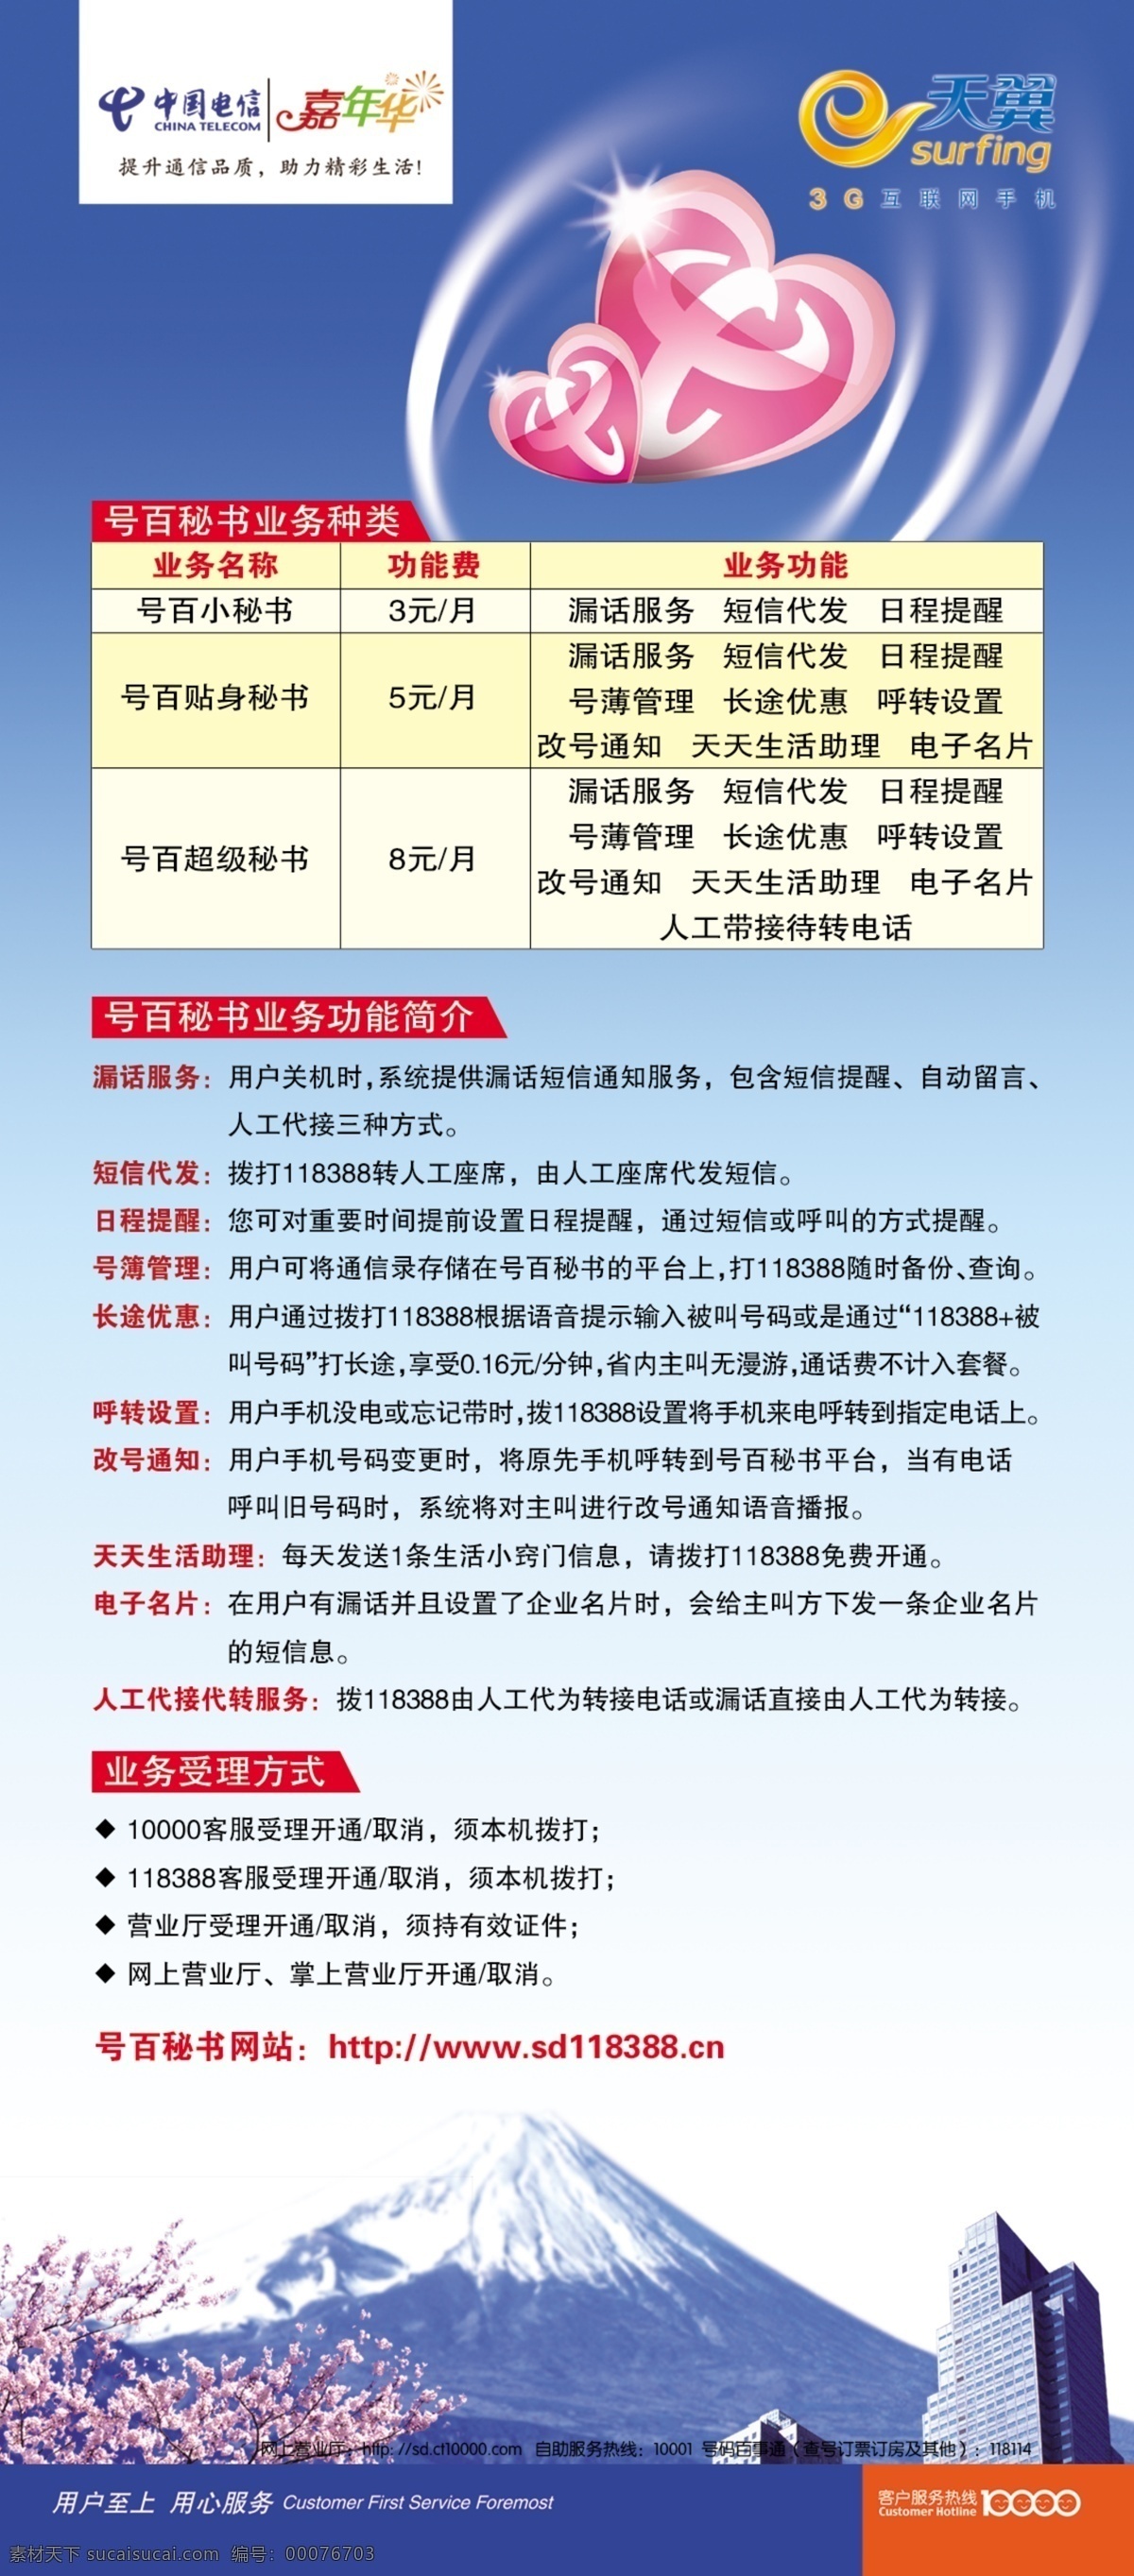 3g dm宣传单 电信 广告设计模板 蓝色 天翼 宣传单 源文件 中国电信 页 短信秘书 矢量图 现代科技